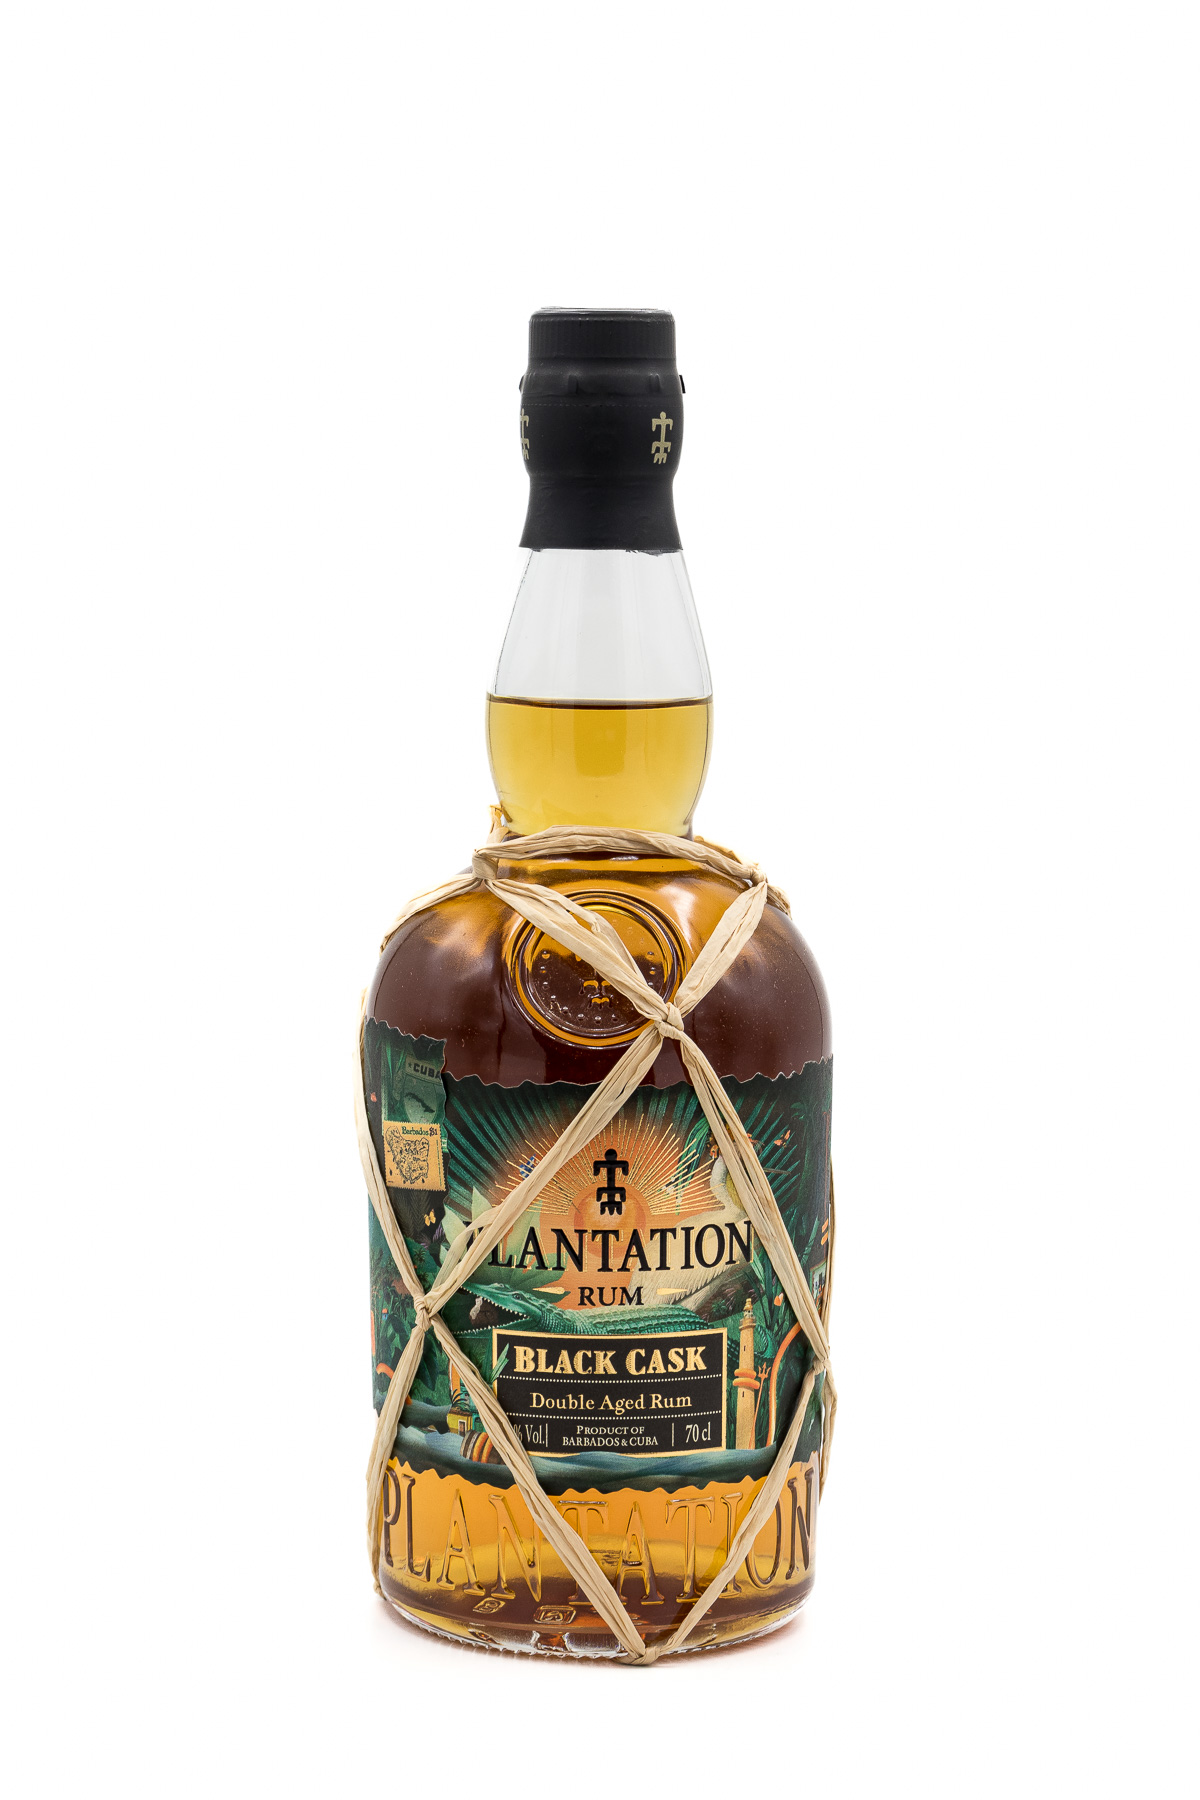 Plantation Black Cask Double Aged Rum 40Proz